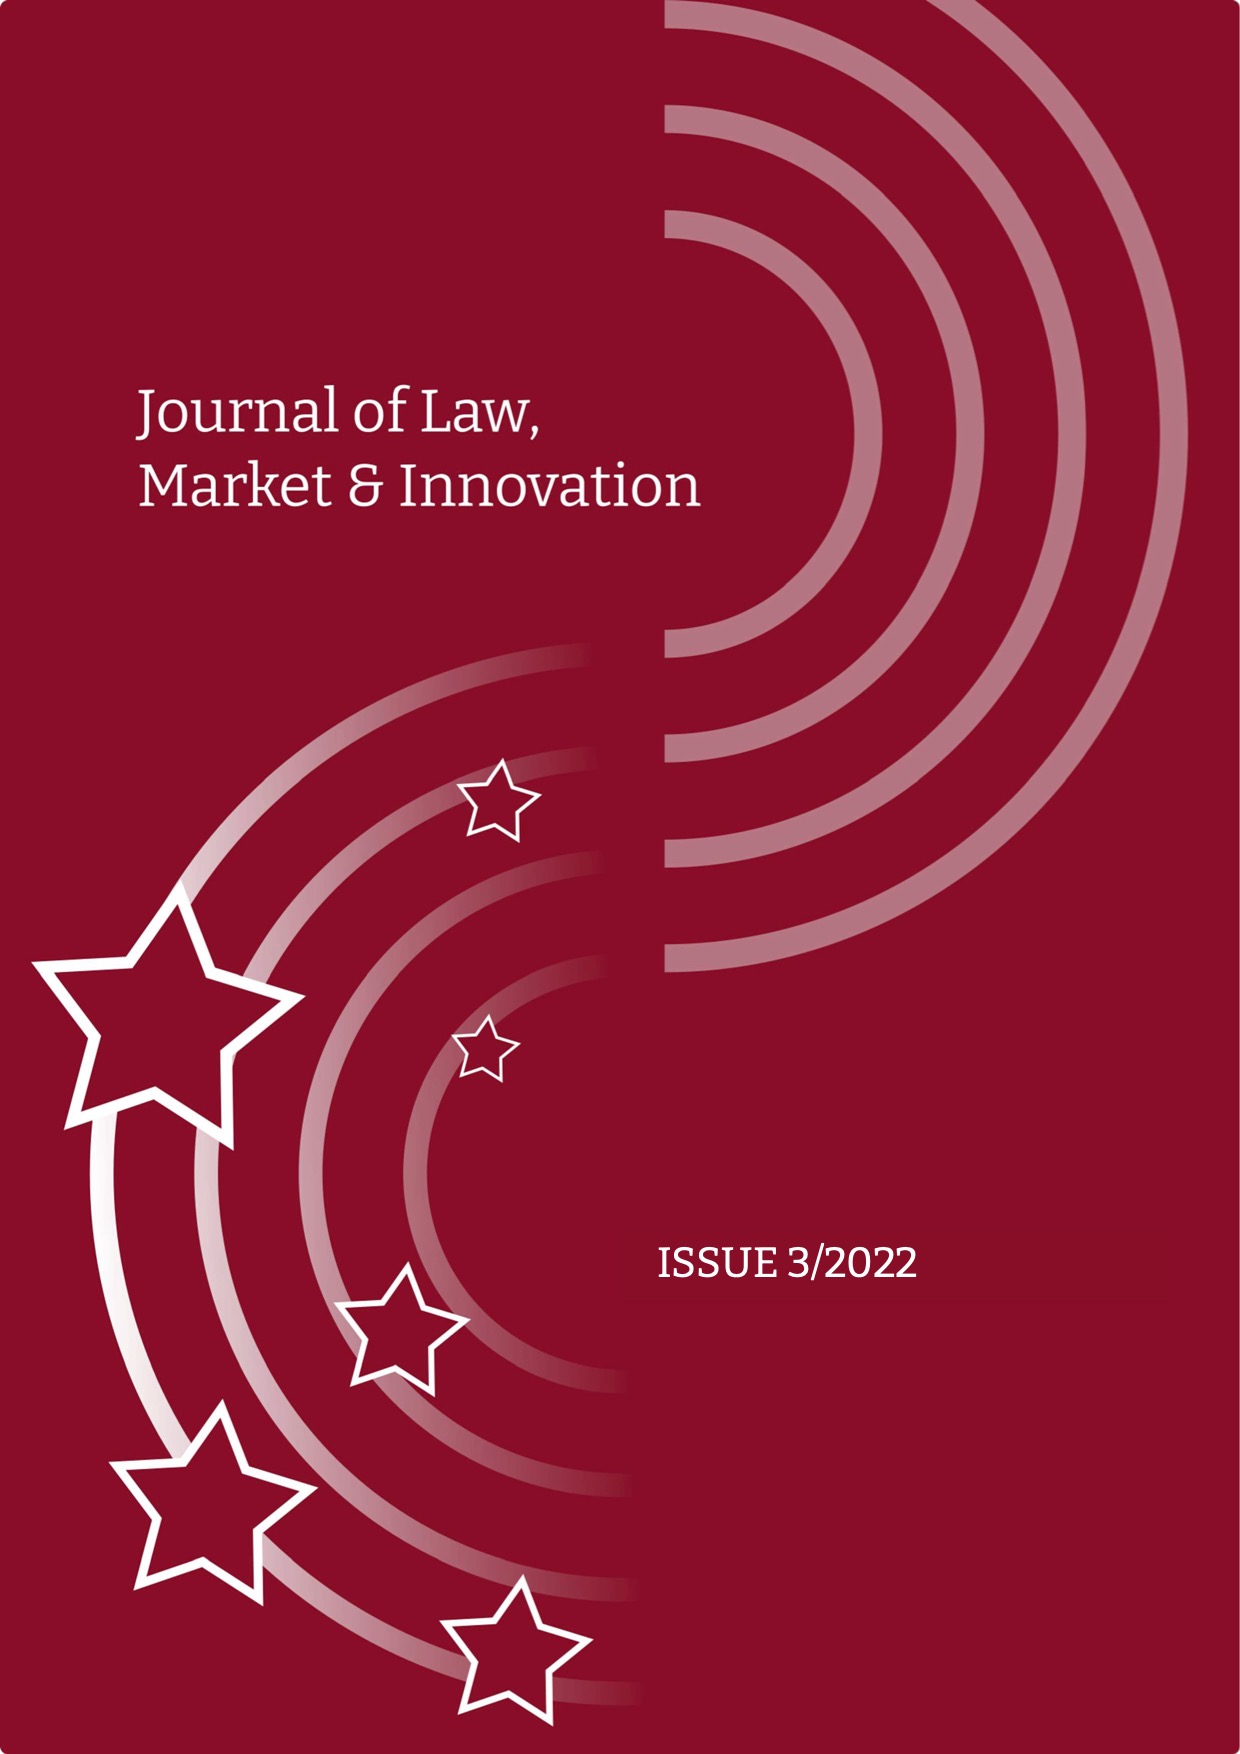 JLMI vol. 1 issue 3/2022